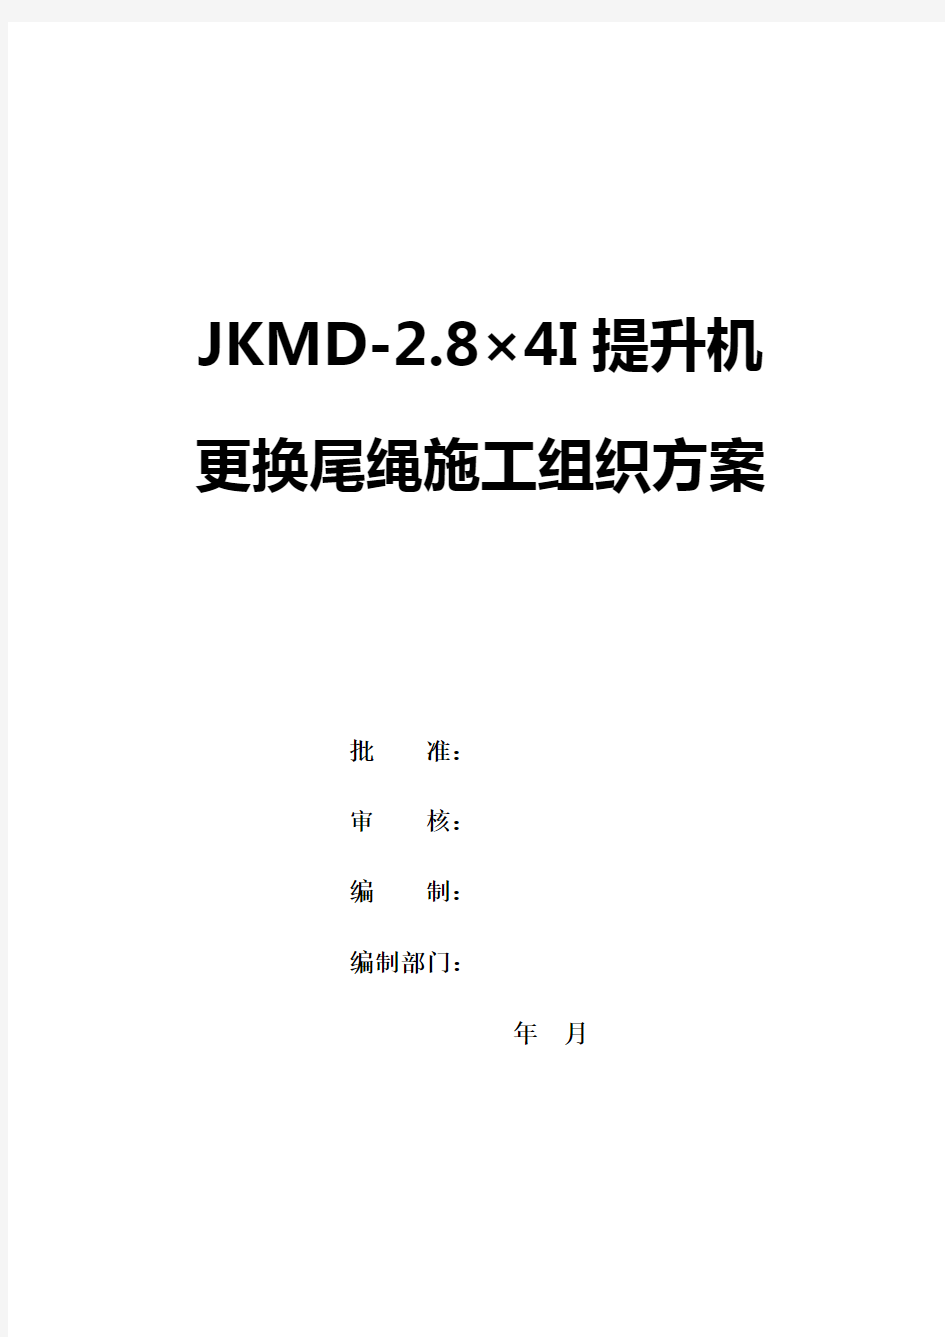 JKMD-2.8×4I多绳摩擦式提升机更换尾绳施工组织方案